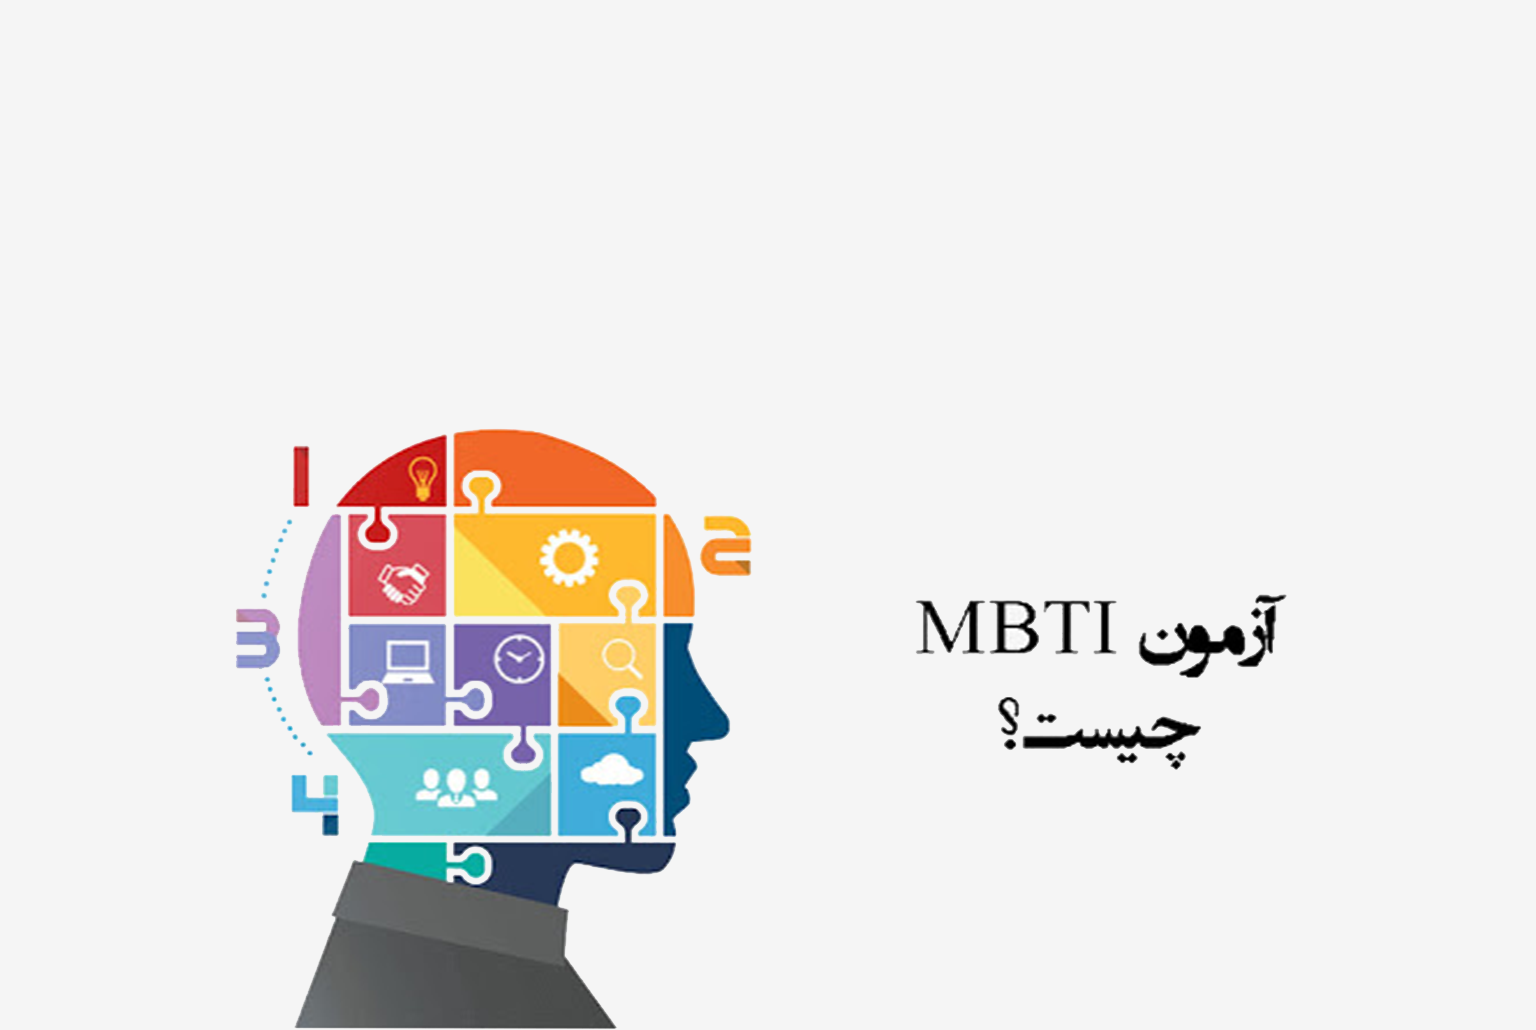 تست MBTI یکی از شناخته شده ترین آزمون های شخصیت شناسی در کشور می باشد، مشاوران آکو در این مقاله به معرفی تست MBTI پرداخته است.